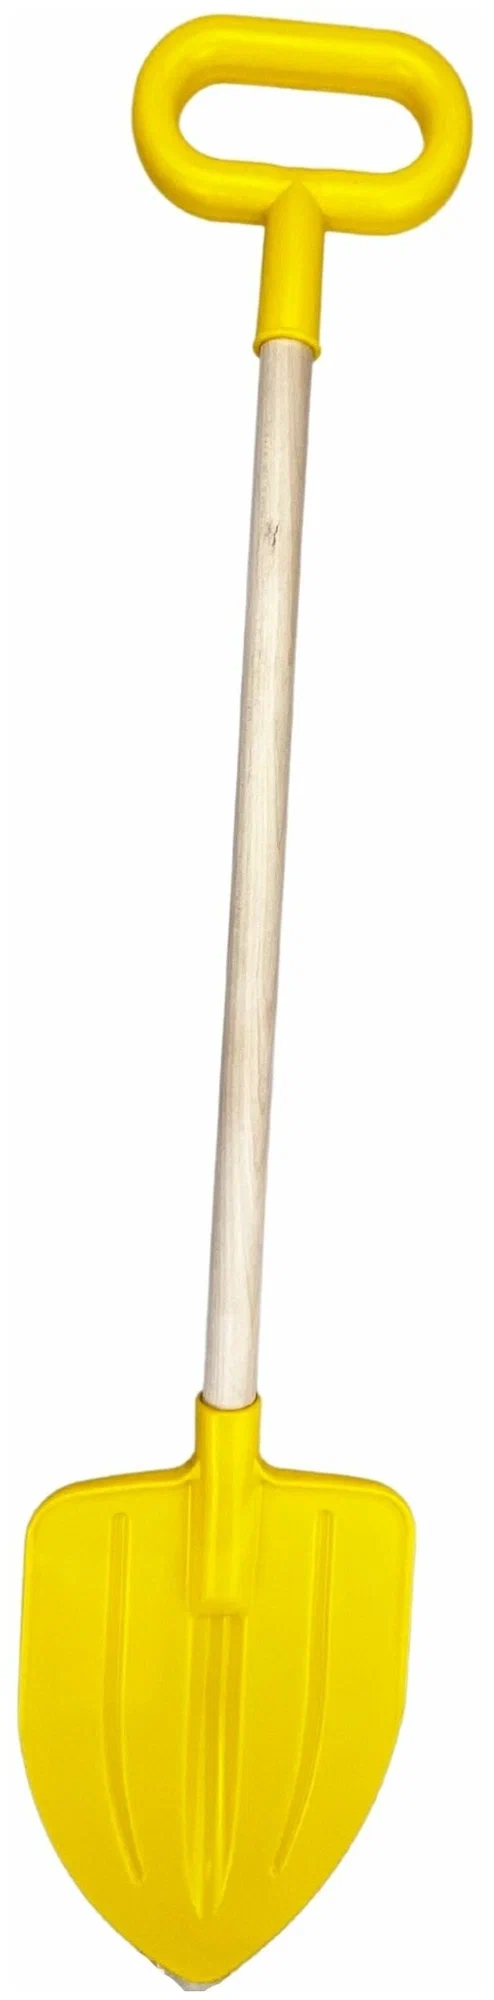 Лопата детская, штыковая, с деревянным черенком, желтая, для снега и песка, размер - 14,5 х 2,5 х 73 см